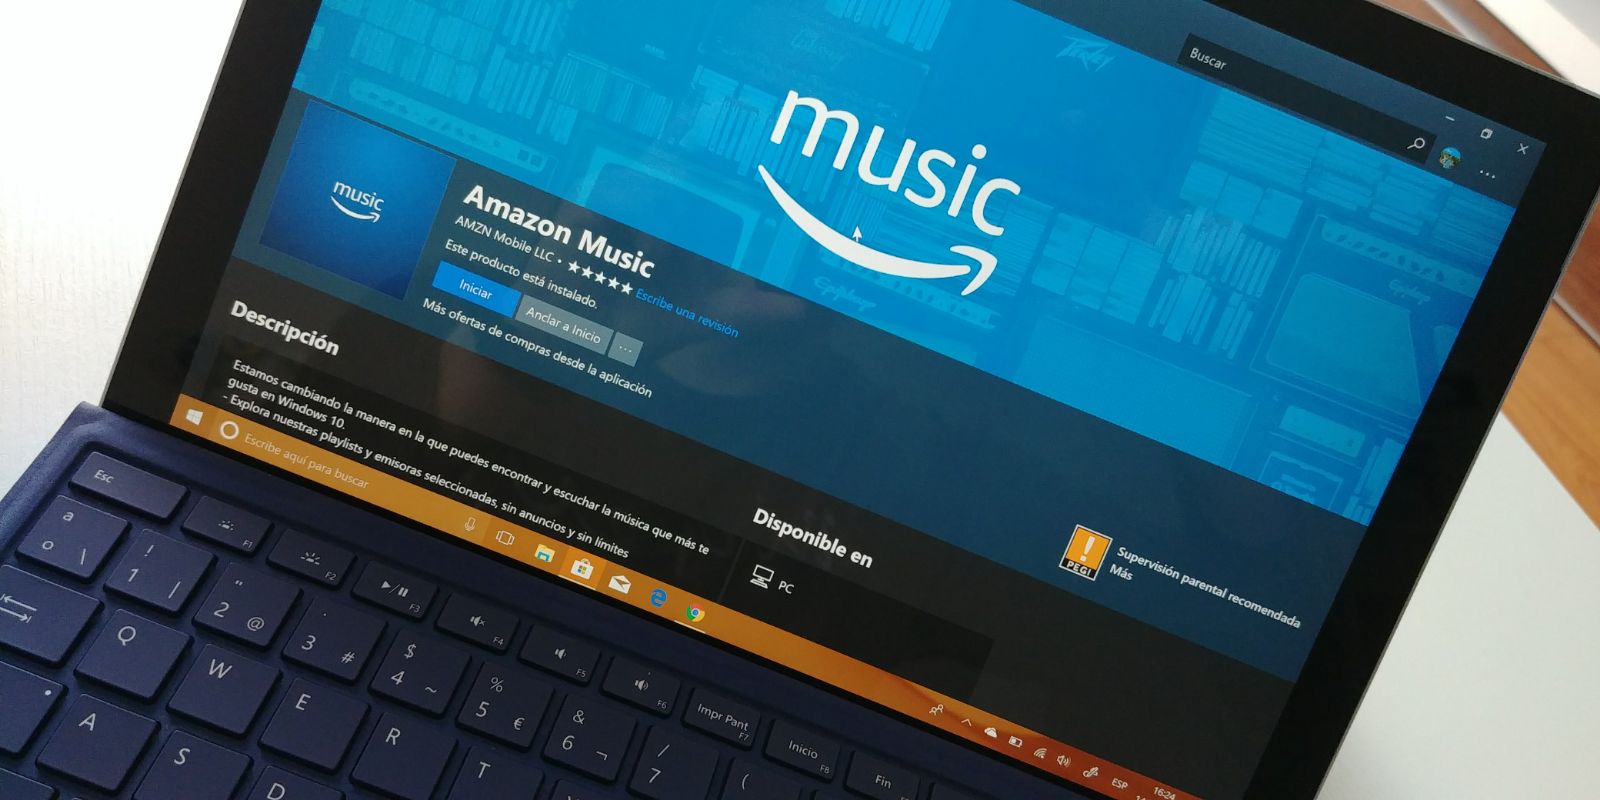 Amazon Music para Windows 10 ya se disponible para descargar desde la tienda